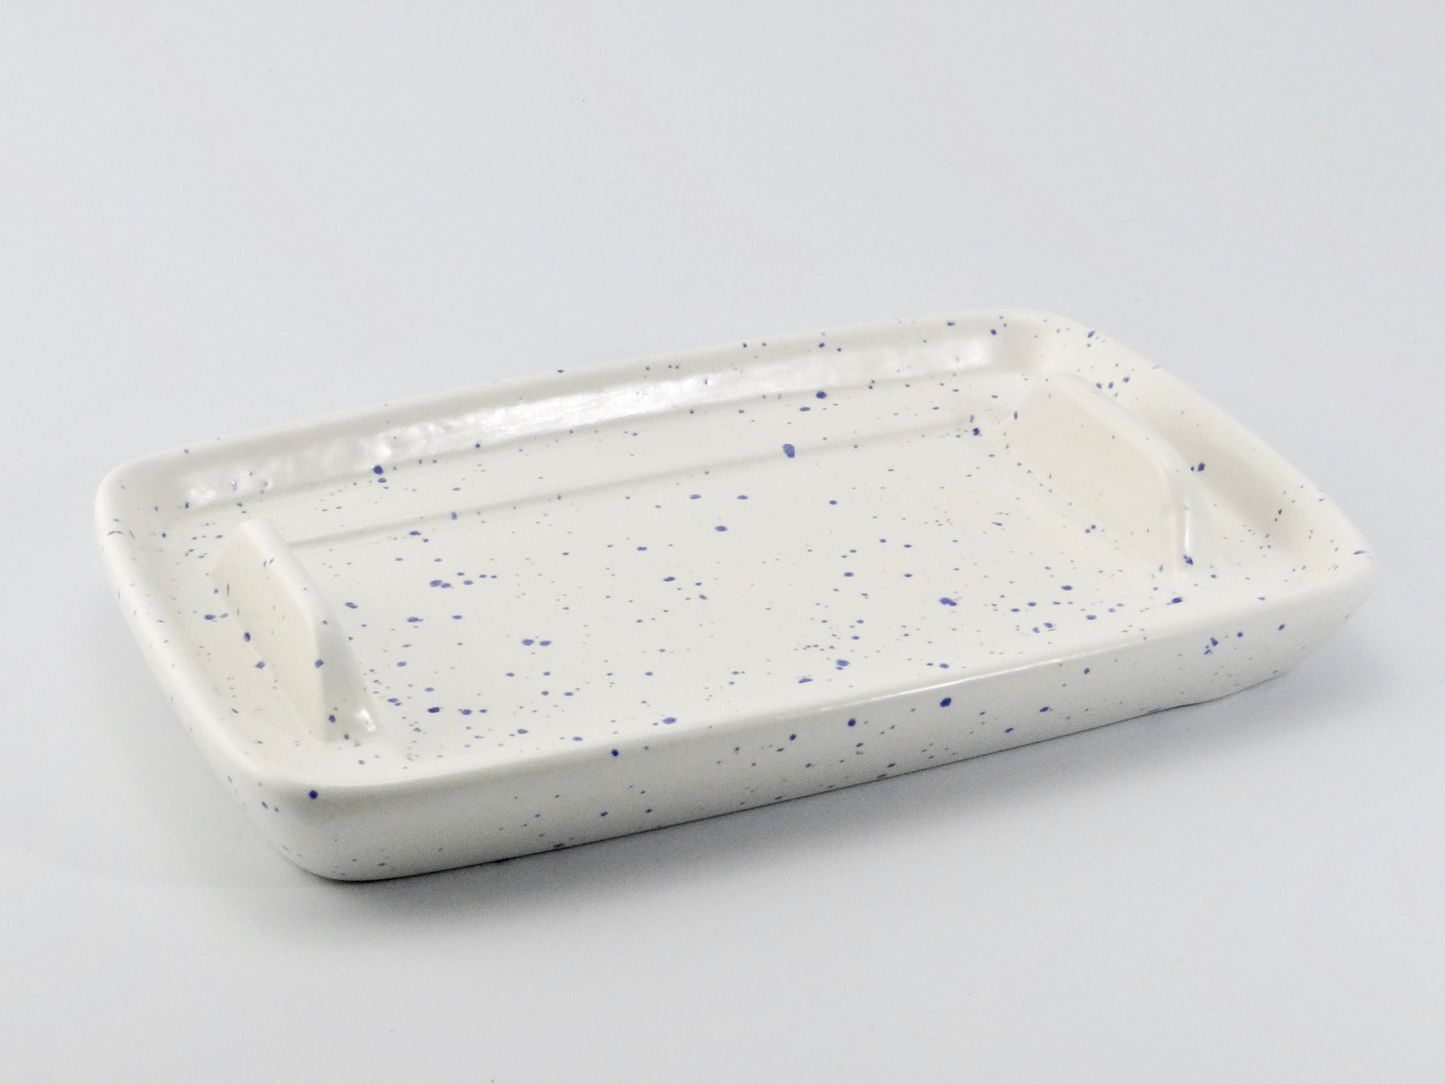 Butter Dish and Sugar Bowl Set - Light Blue Speckled Glaze